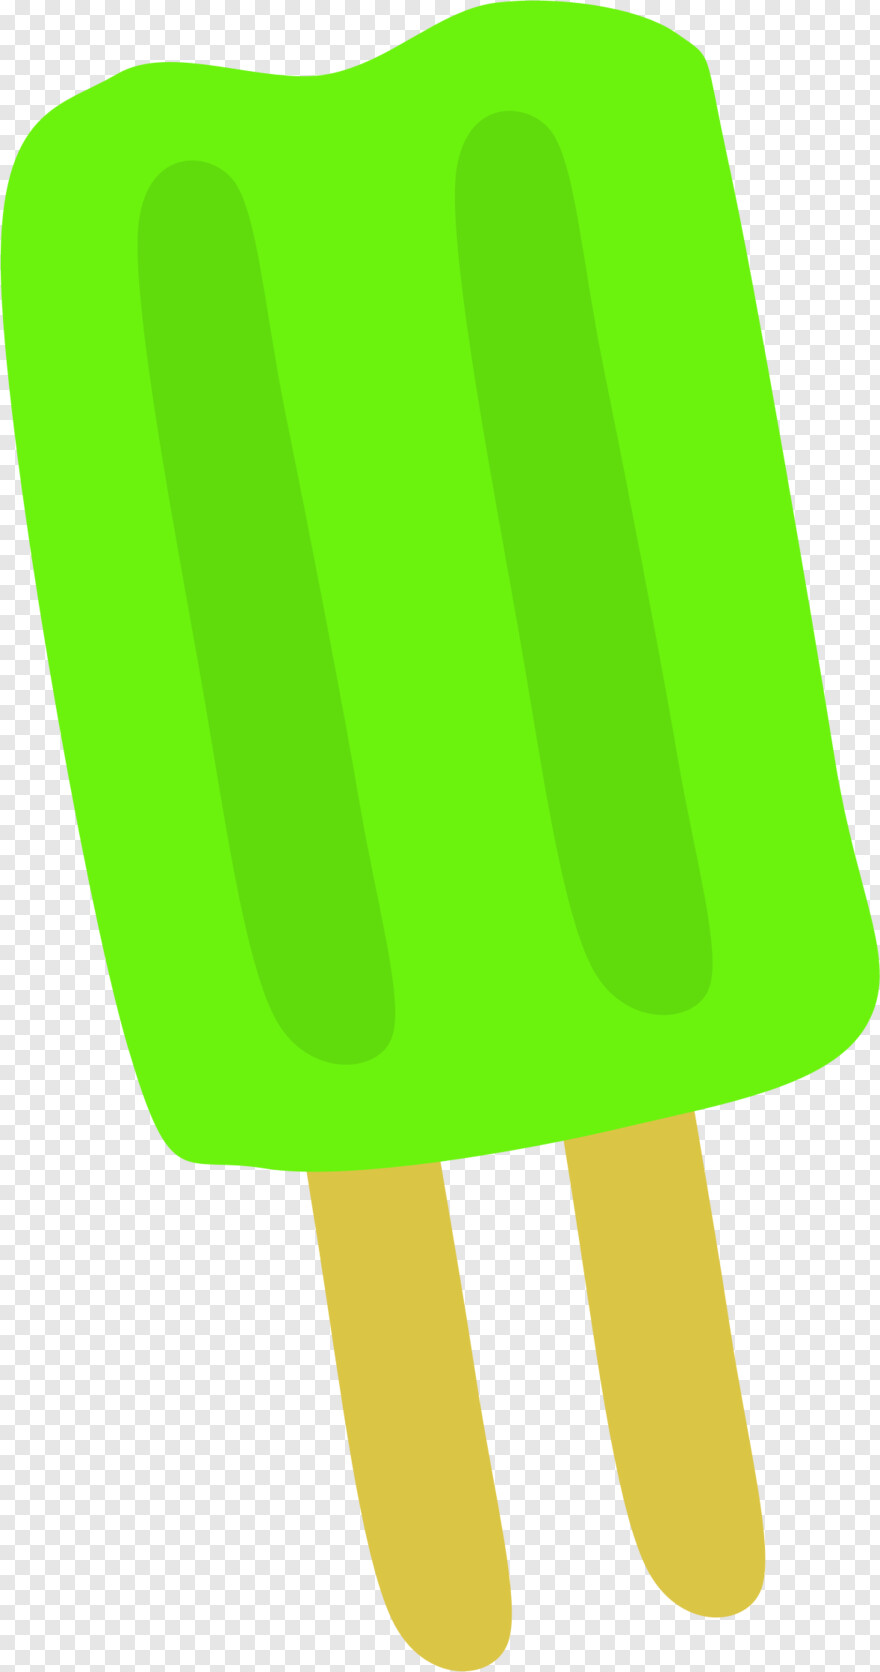 ice-cream-sundae # 969430